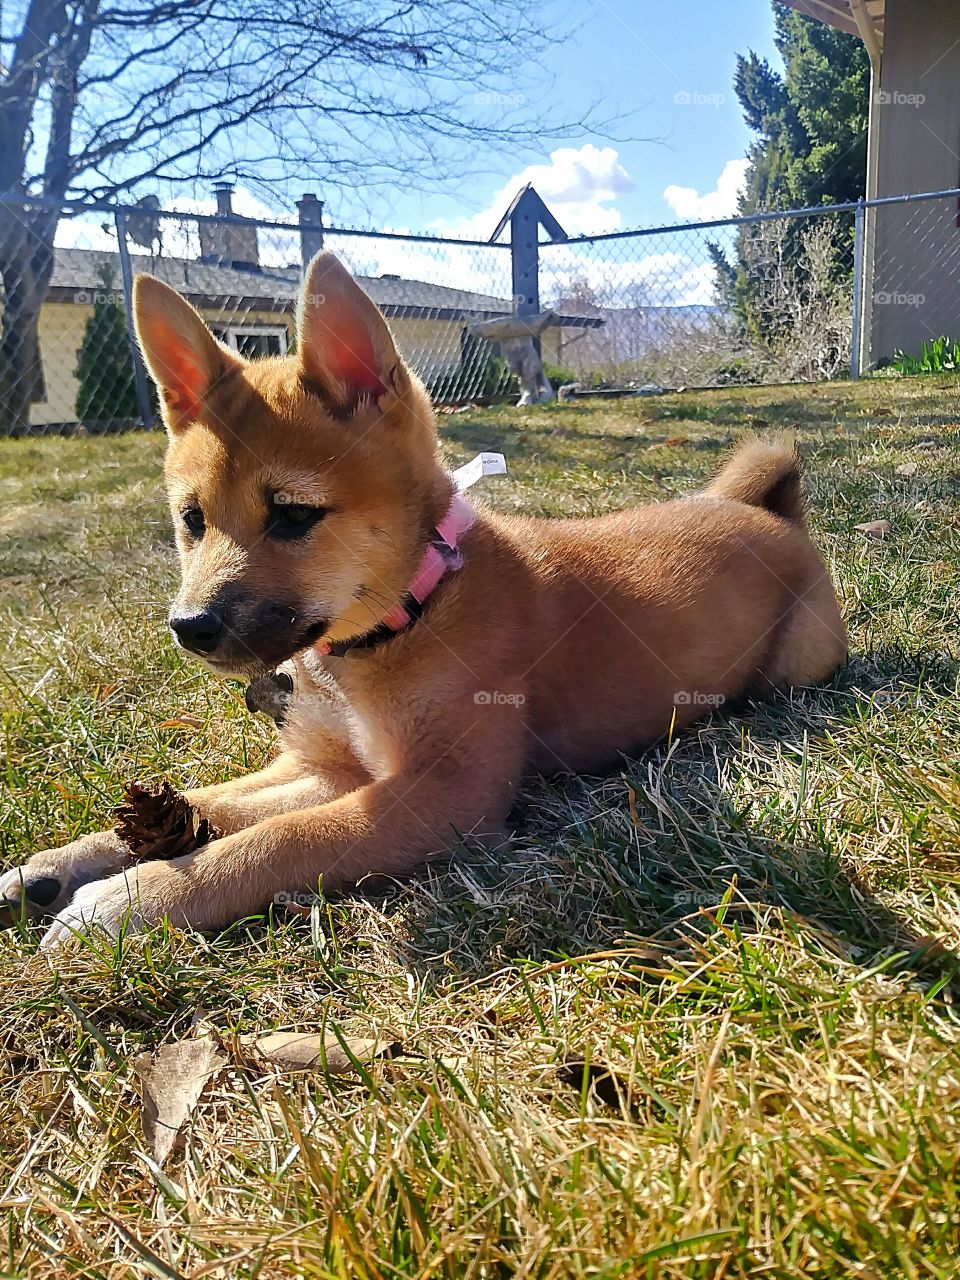 A beautiful Shiba Inu pup named Vixen enjoying the sunny day